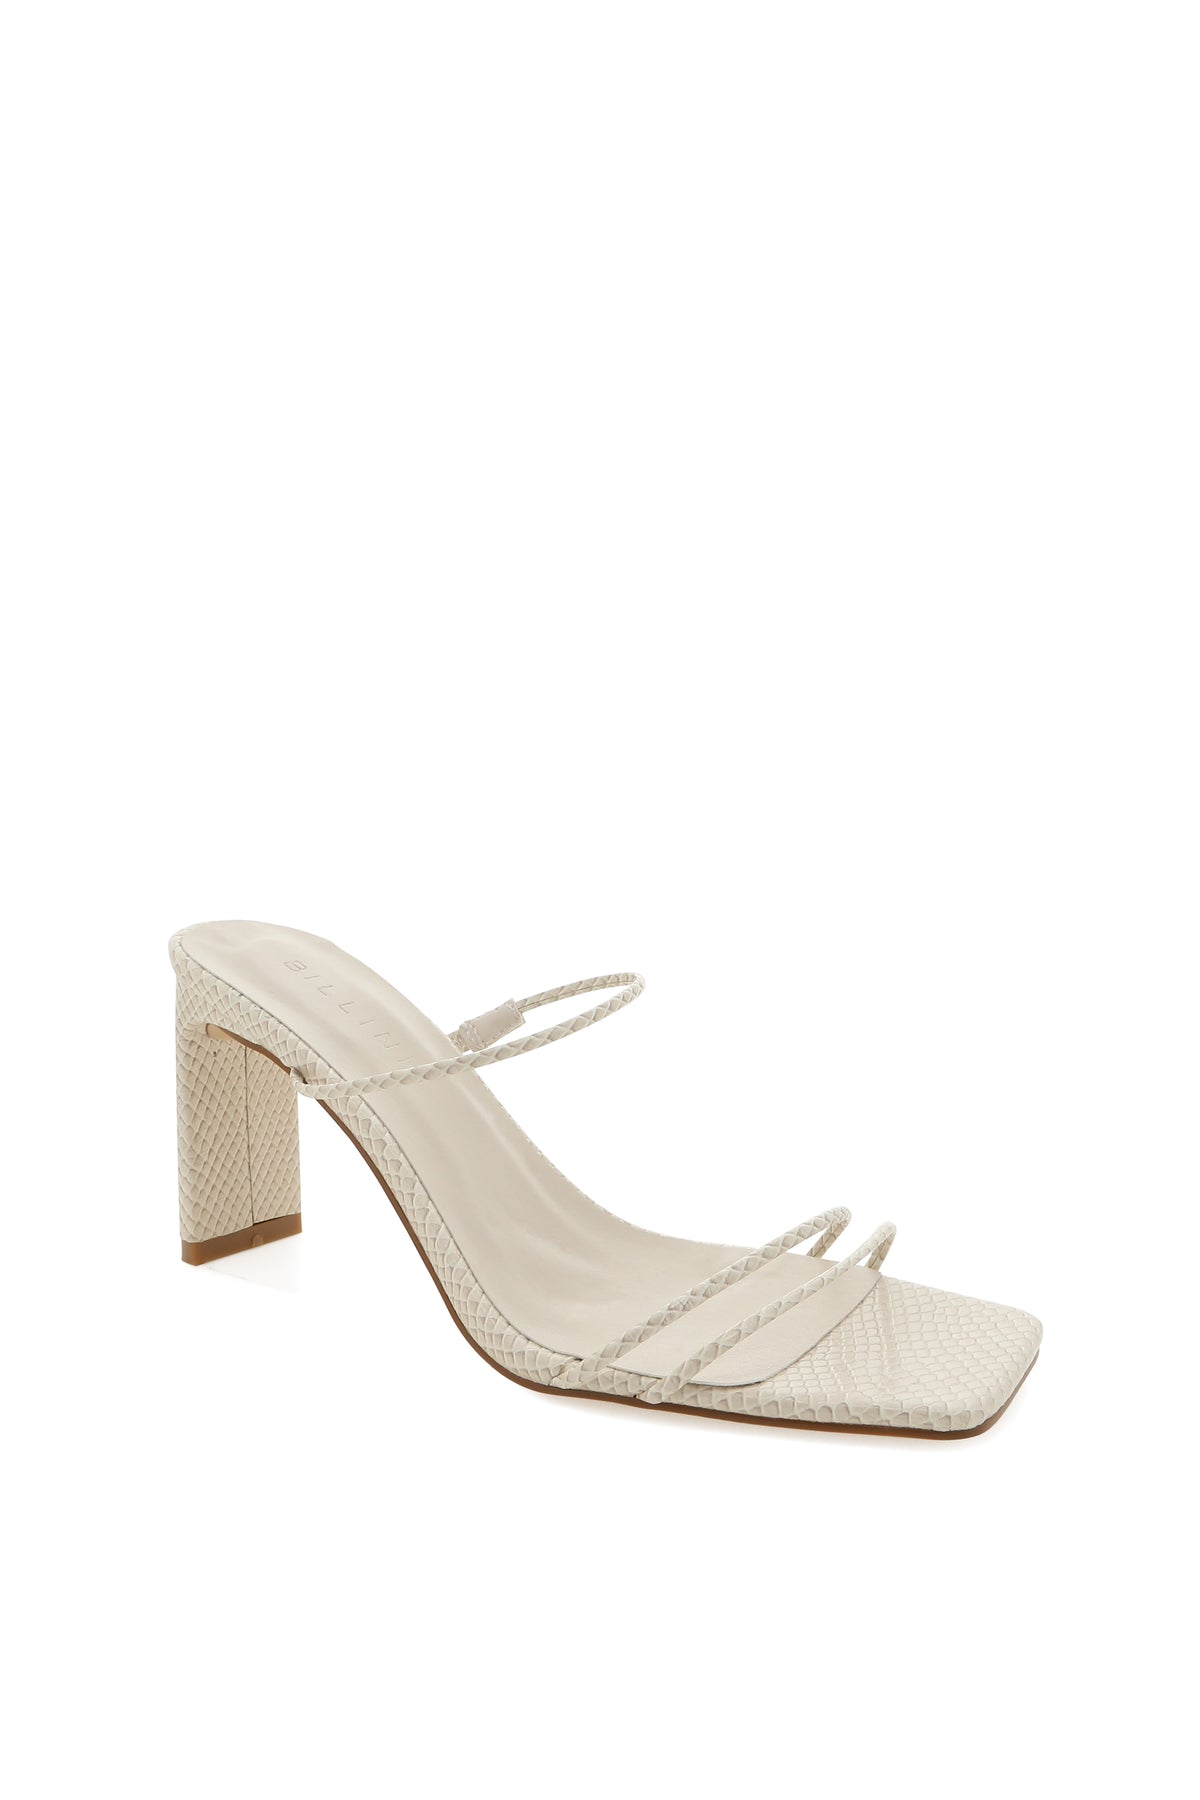 heel for a sun dress - wedding guest shoes